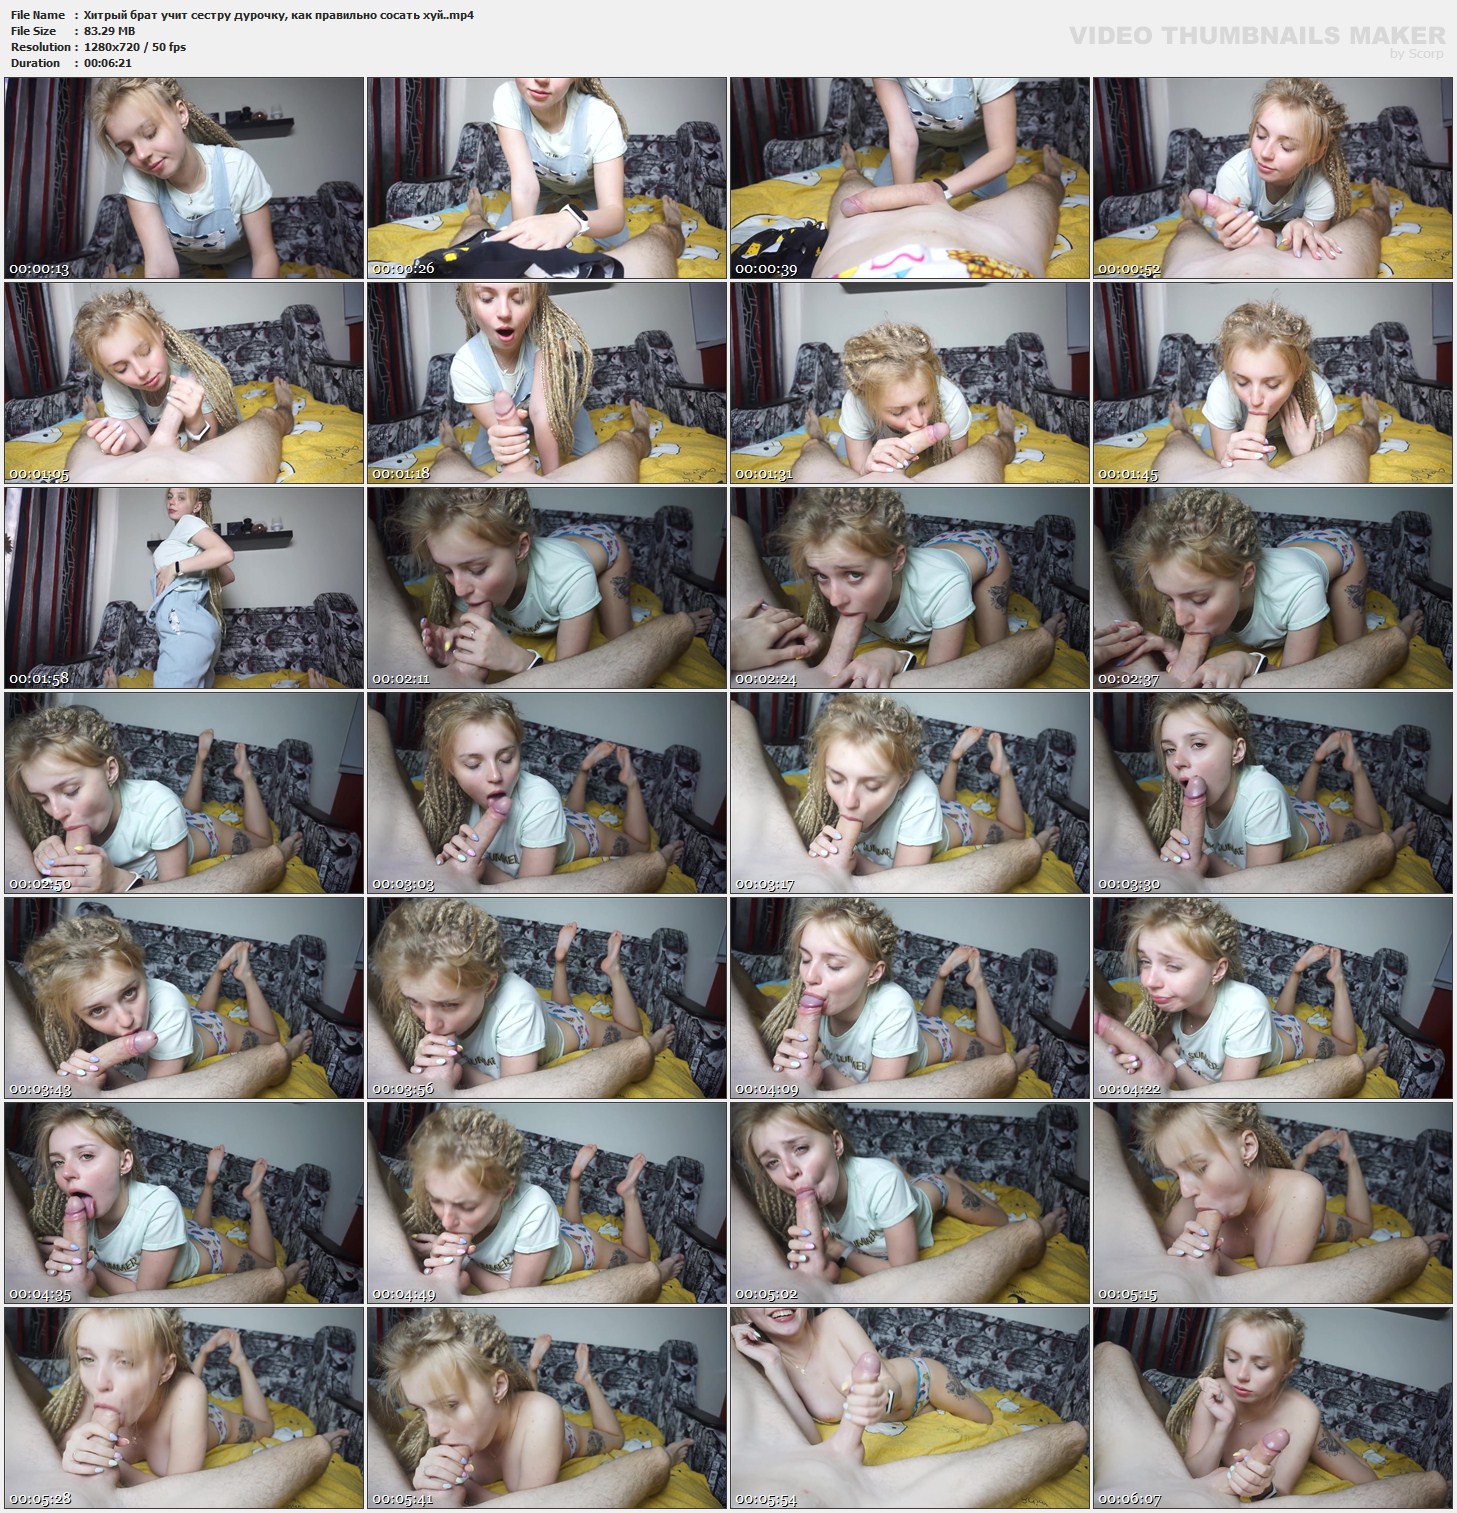 сестра учит брата как делать куни фото 36